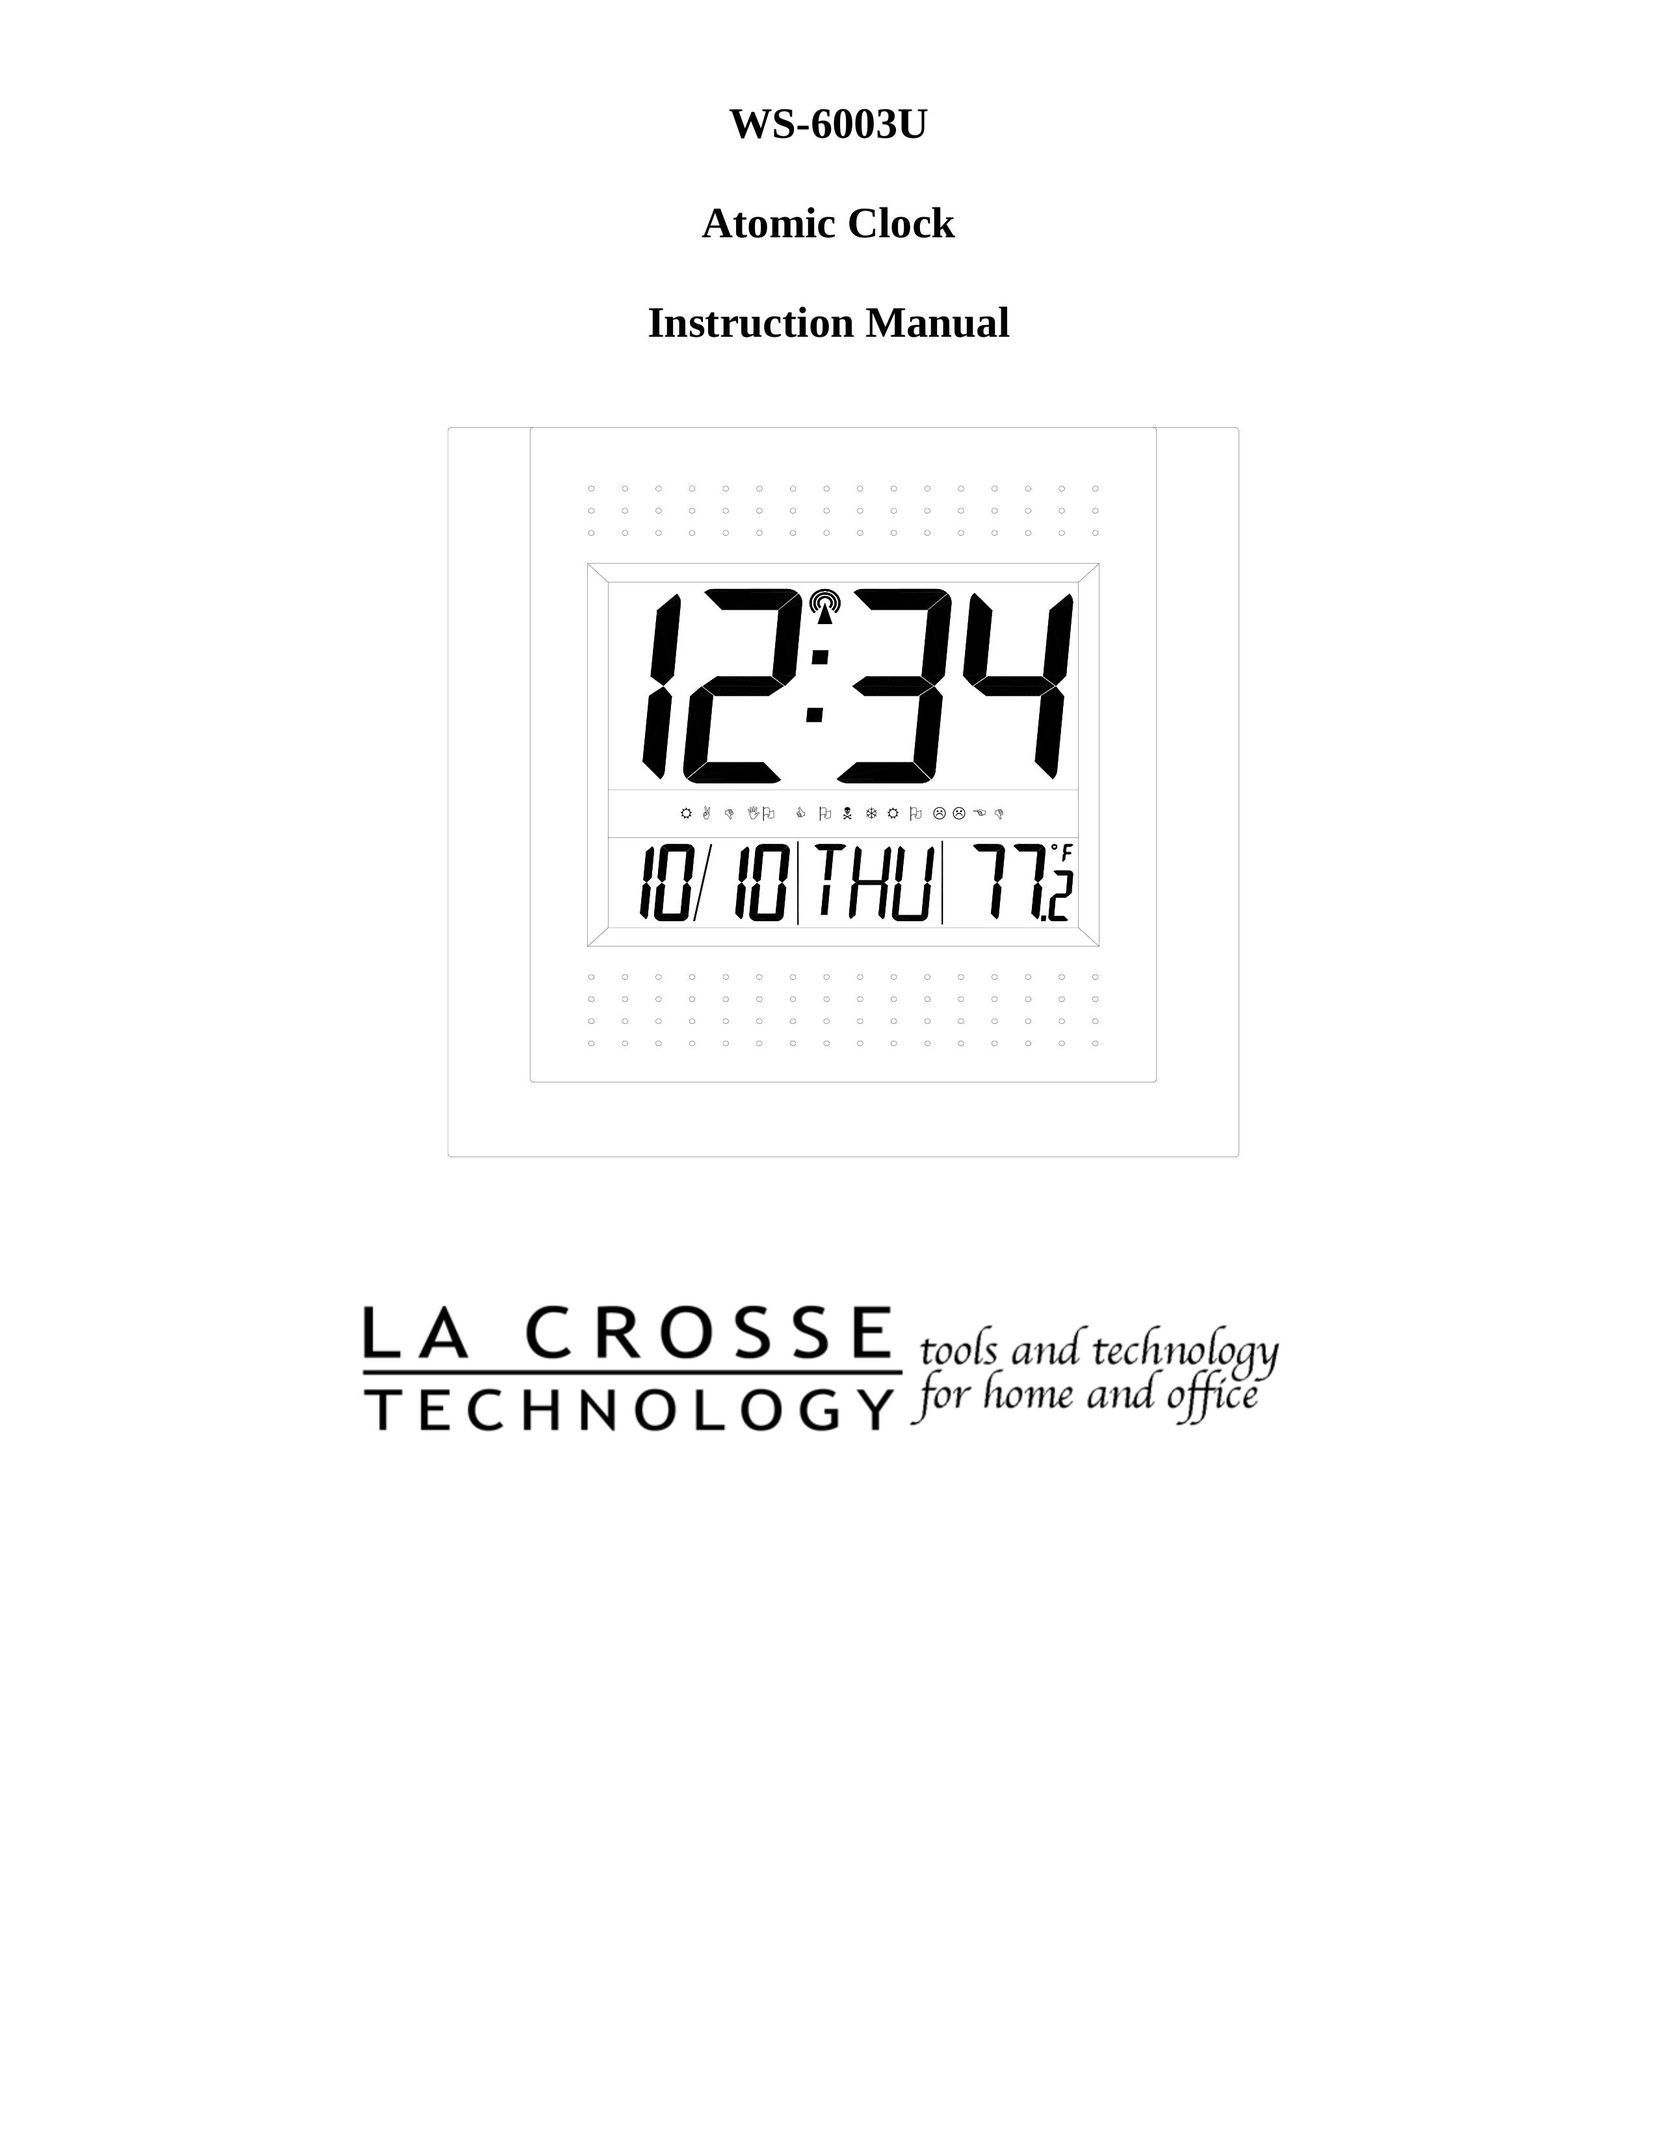 La Crosse Technology WS-6003U Clock User Manual